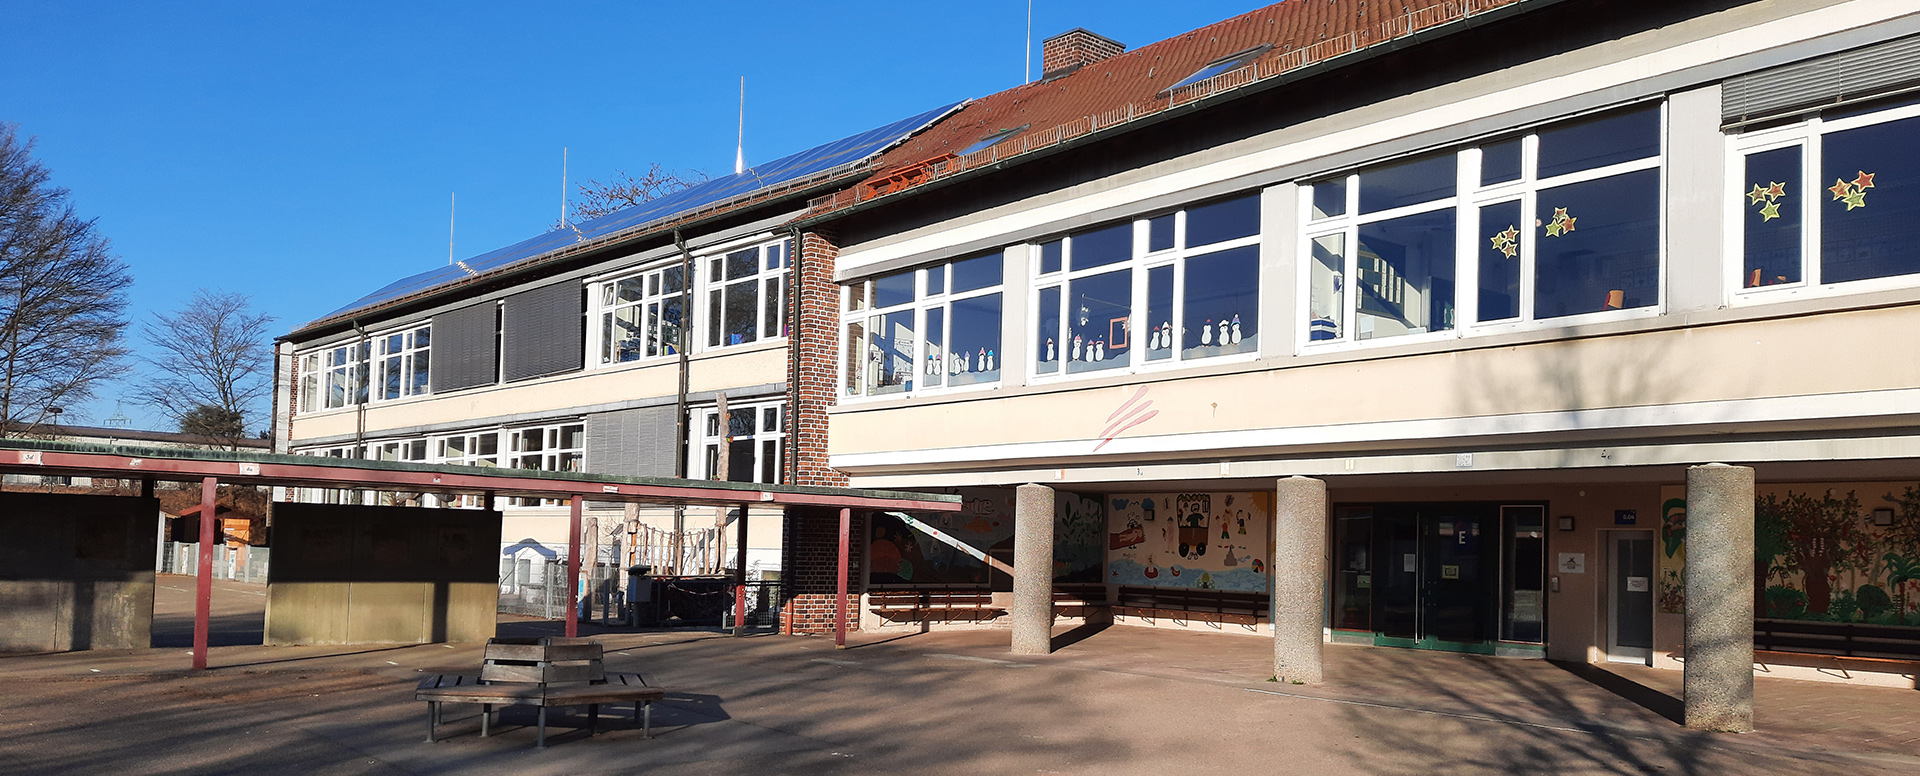 Grundschule Haldenschule Rommelshausen - Sliderbild Bilder